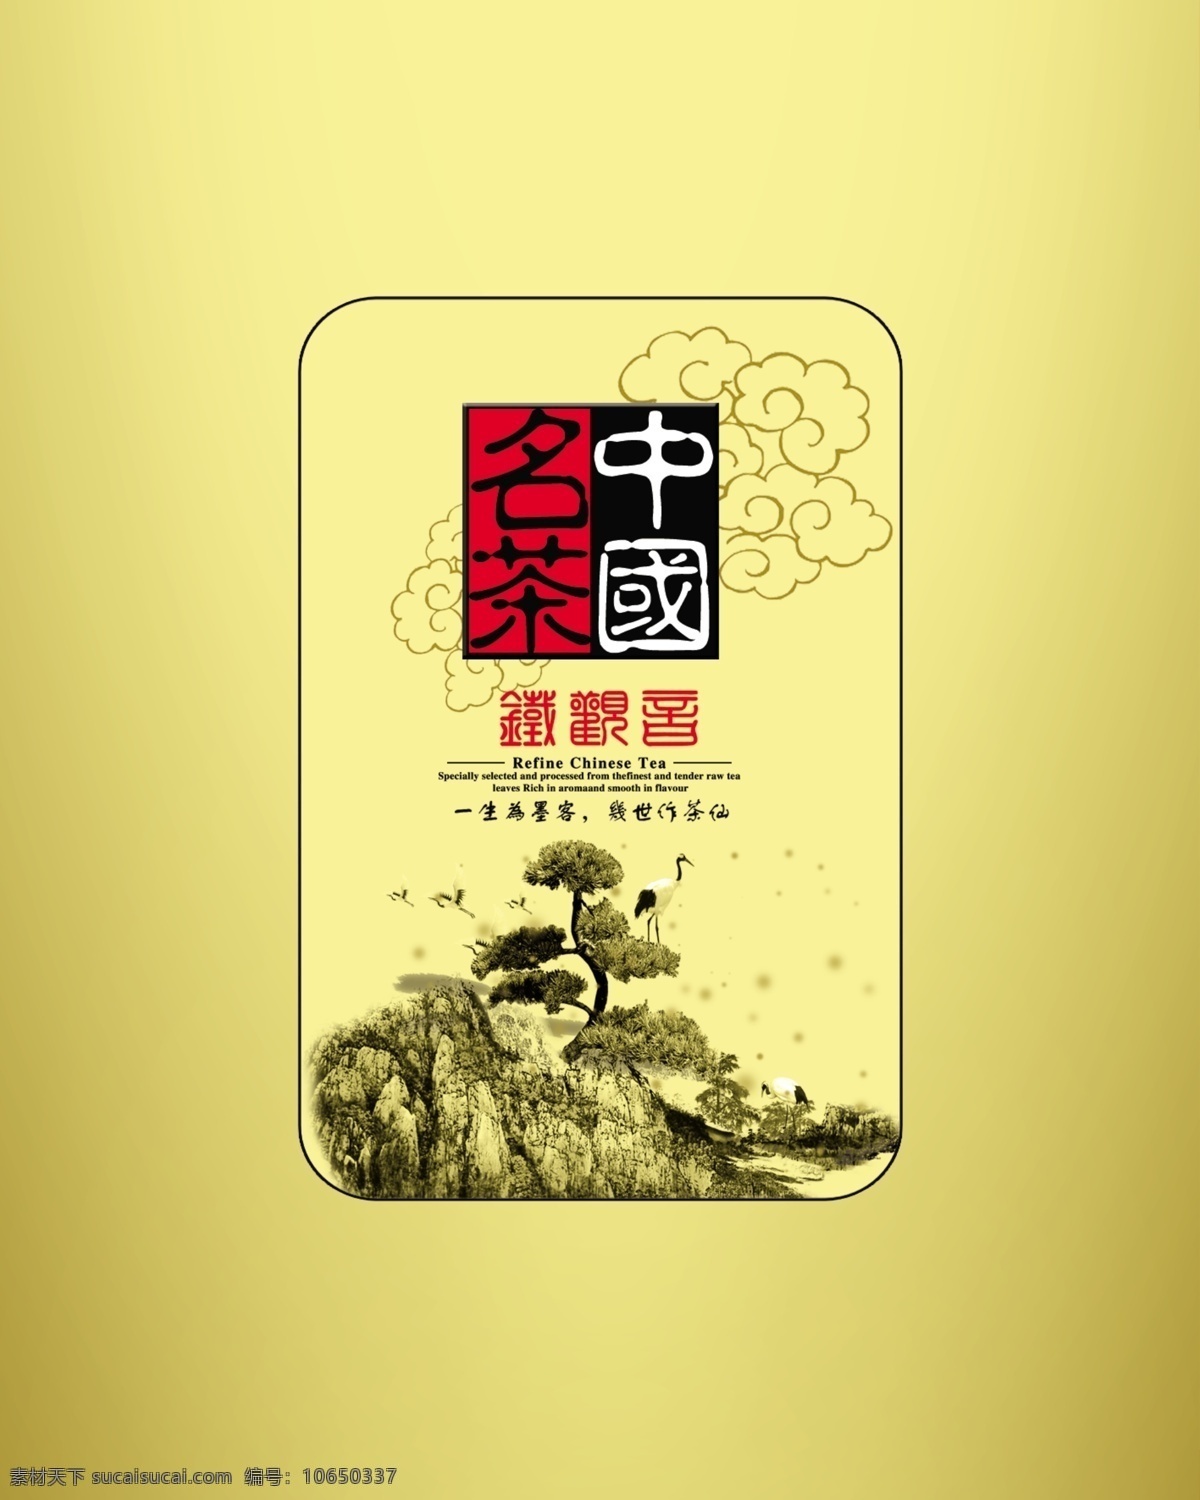 中国 名茶 铁观音 包装设计 茶包装 中国名茶 茶叶包装